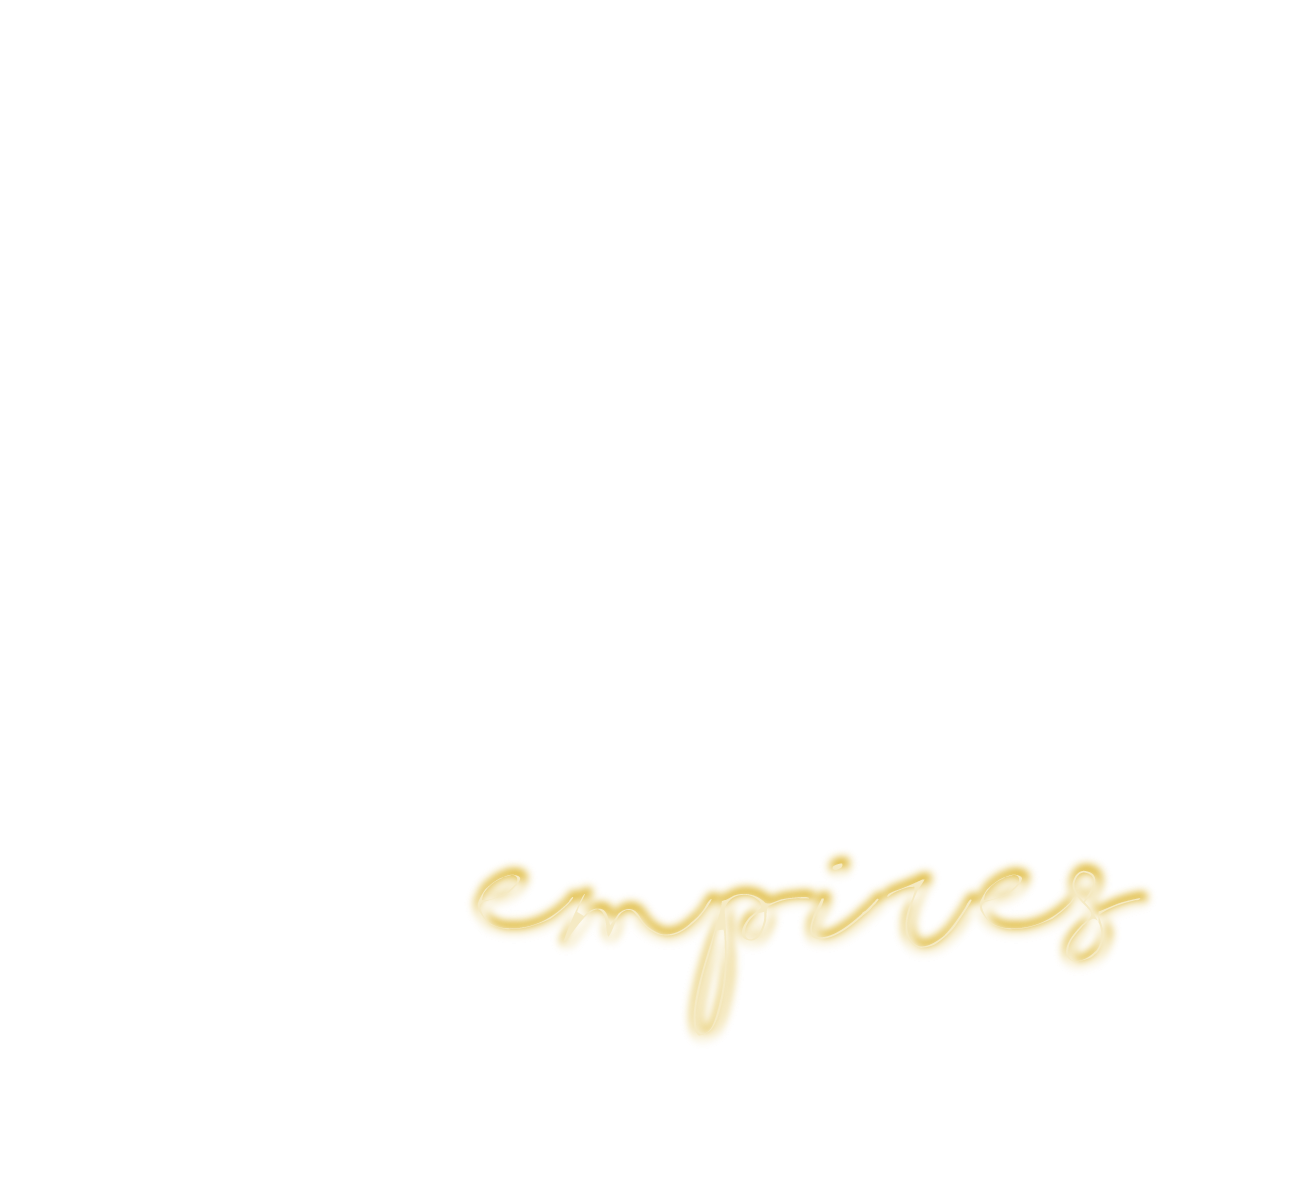 UMBRELLA-EMPIRES-LOGO-BLANCO